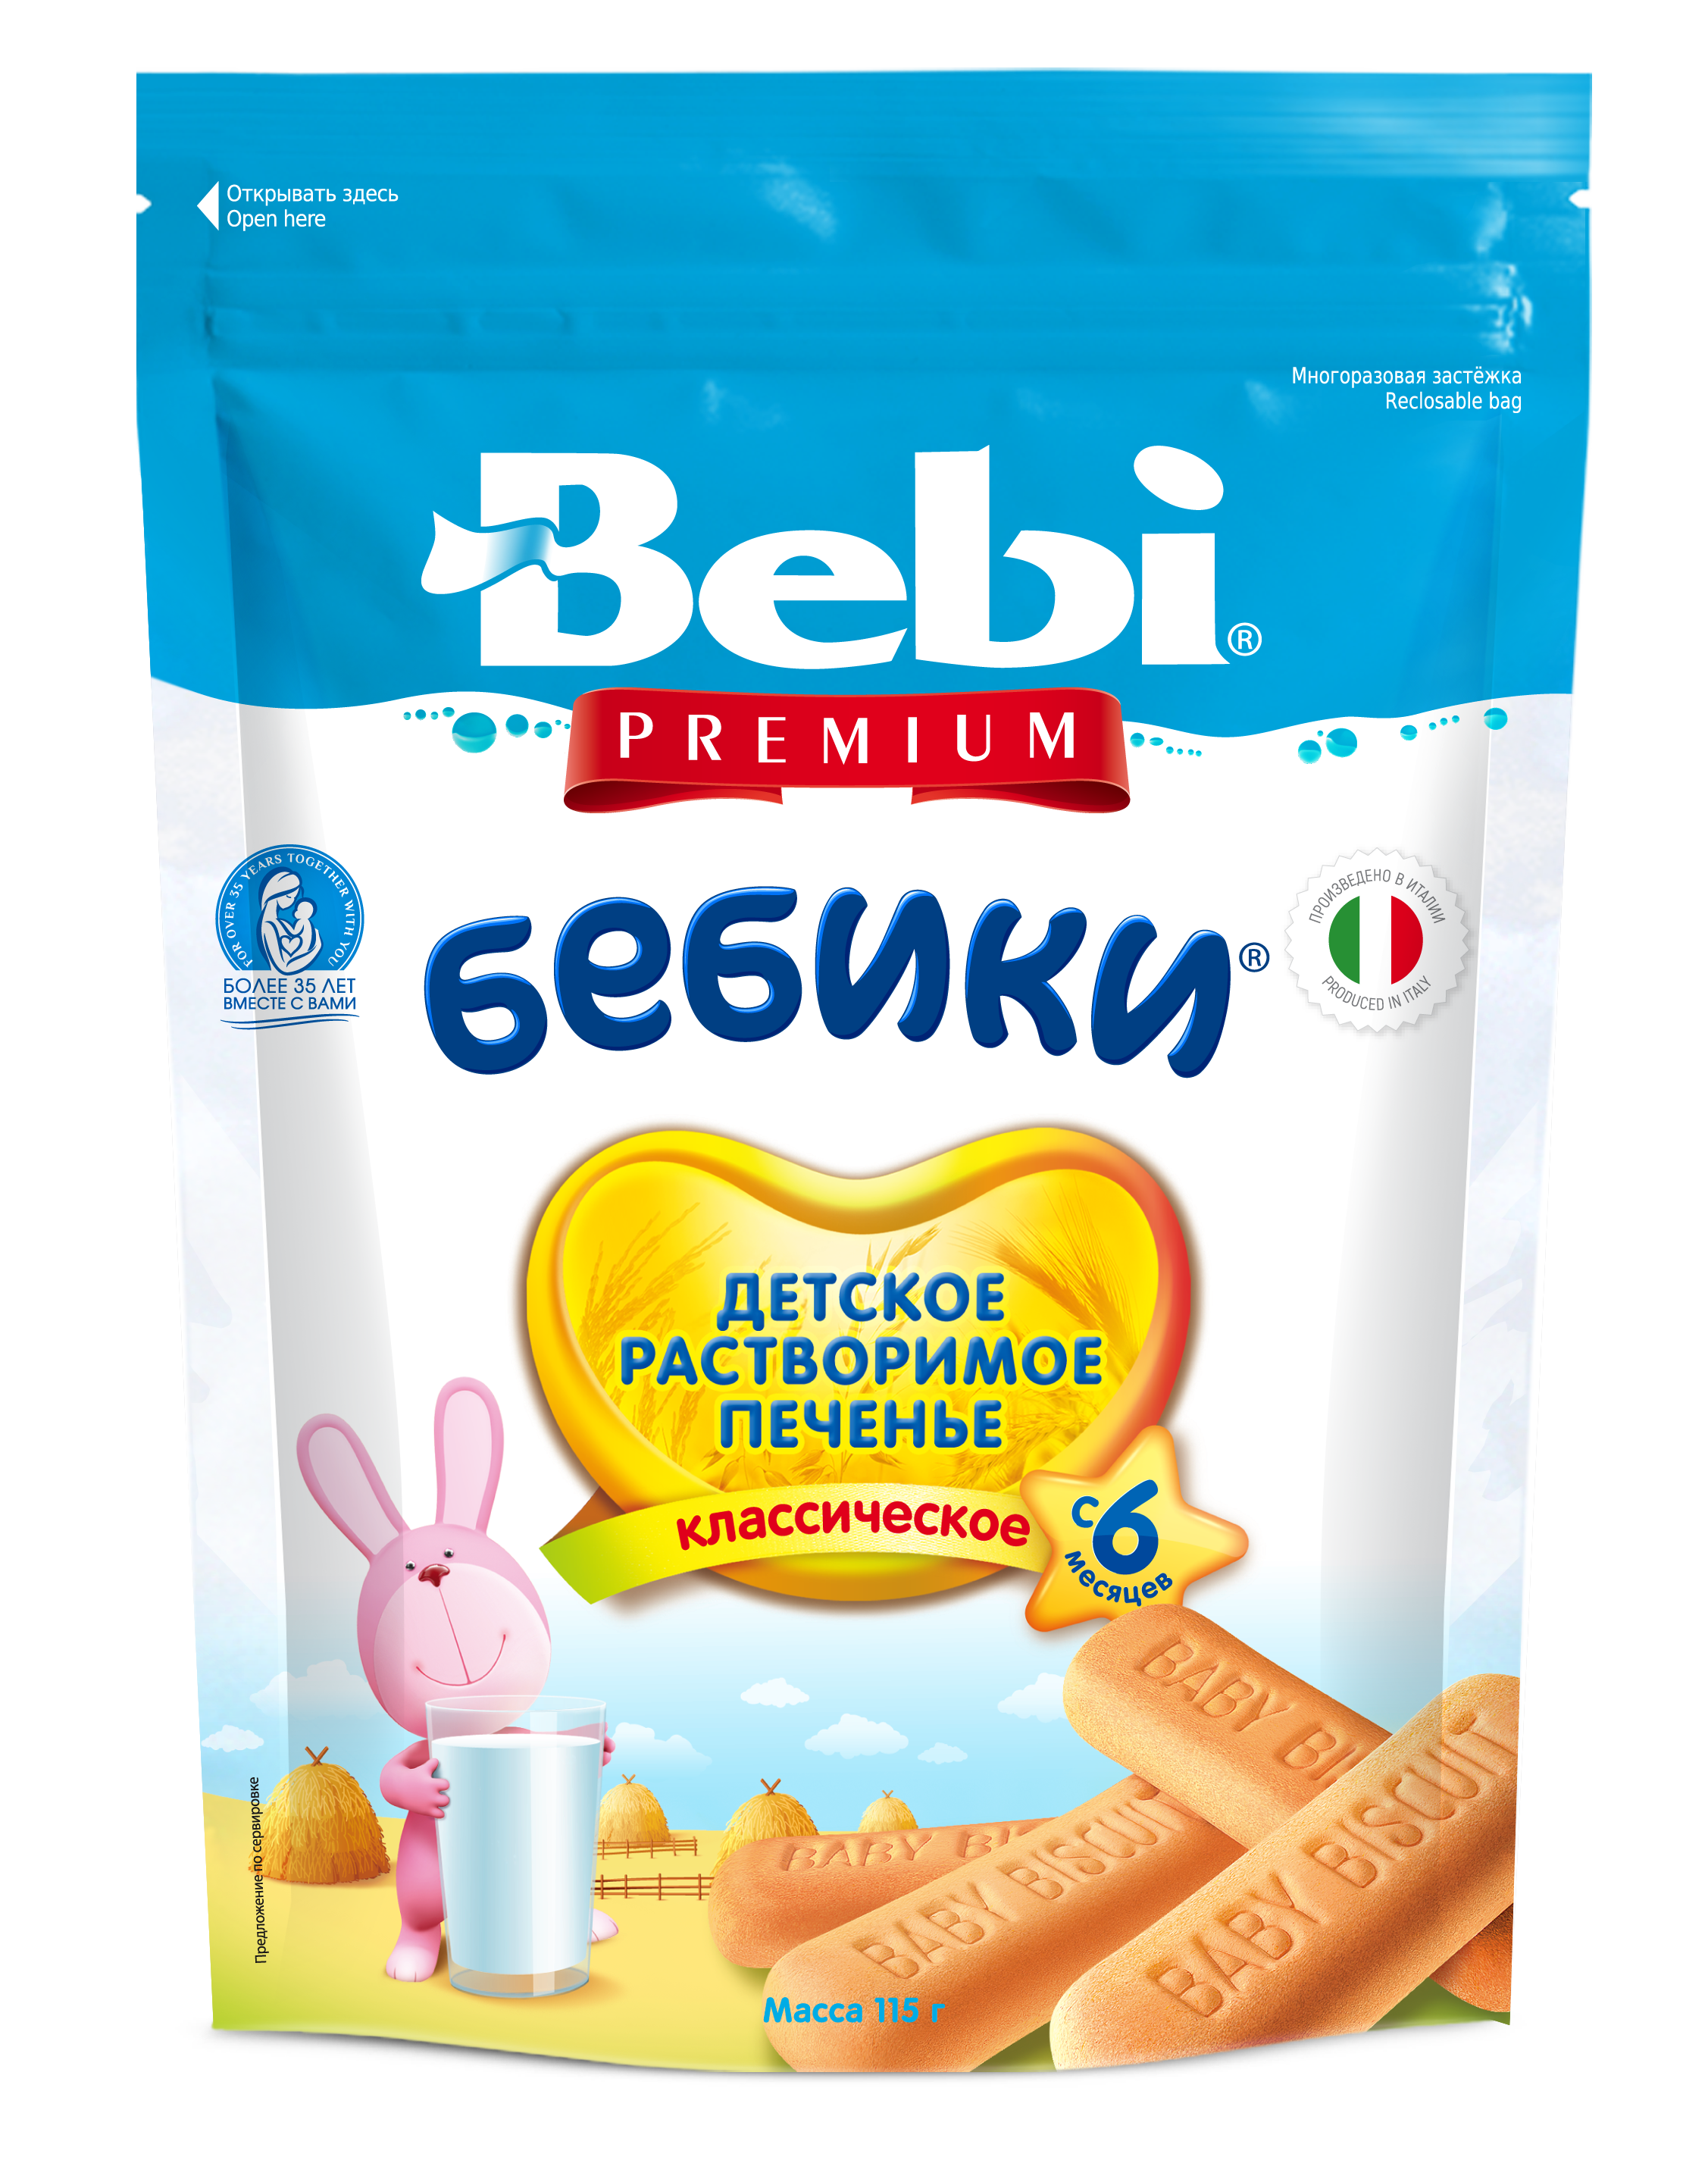 Печенье Bebi Premium Бебики Классическое, 115 г - фото 1